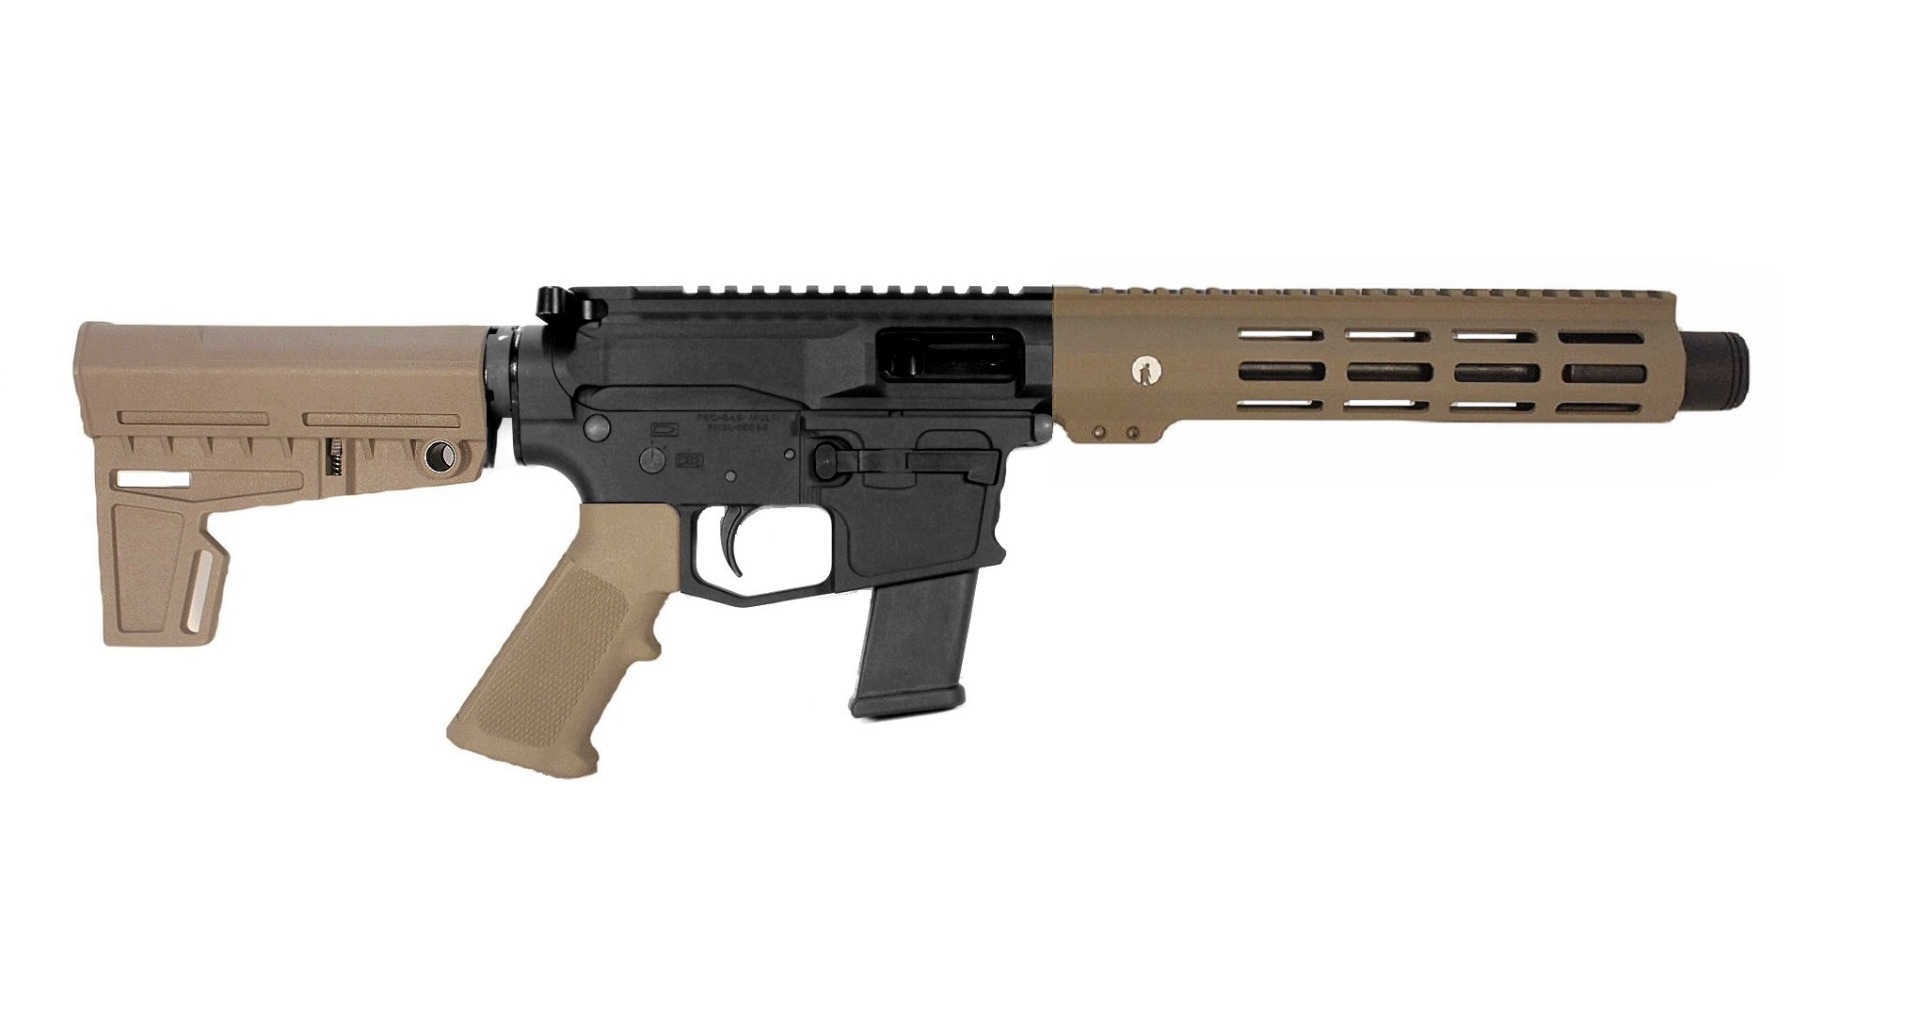 8 inch 9mm AR-15 Pistol in BLK/FDE Color 